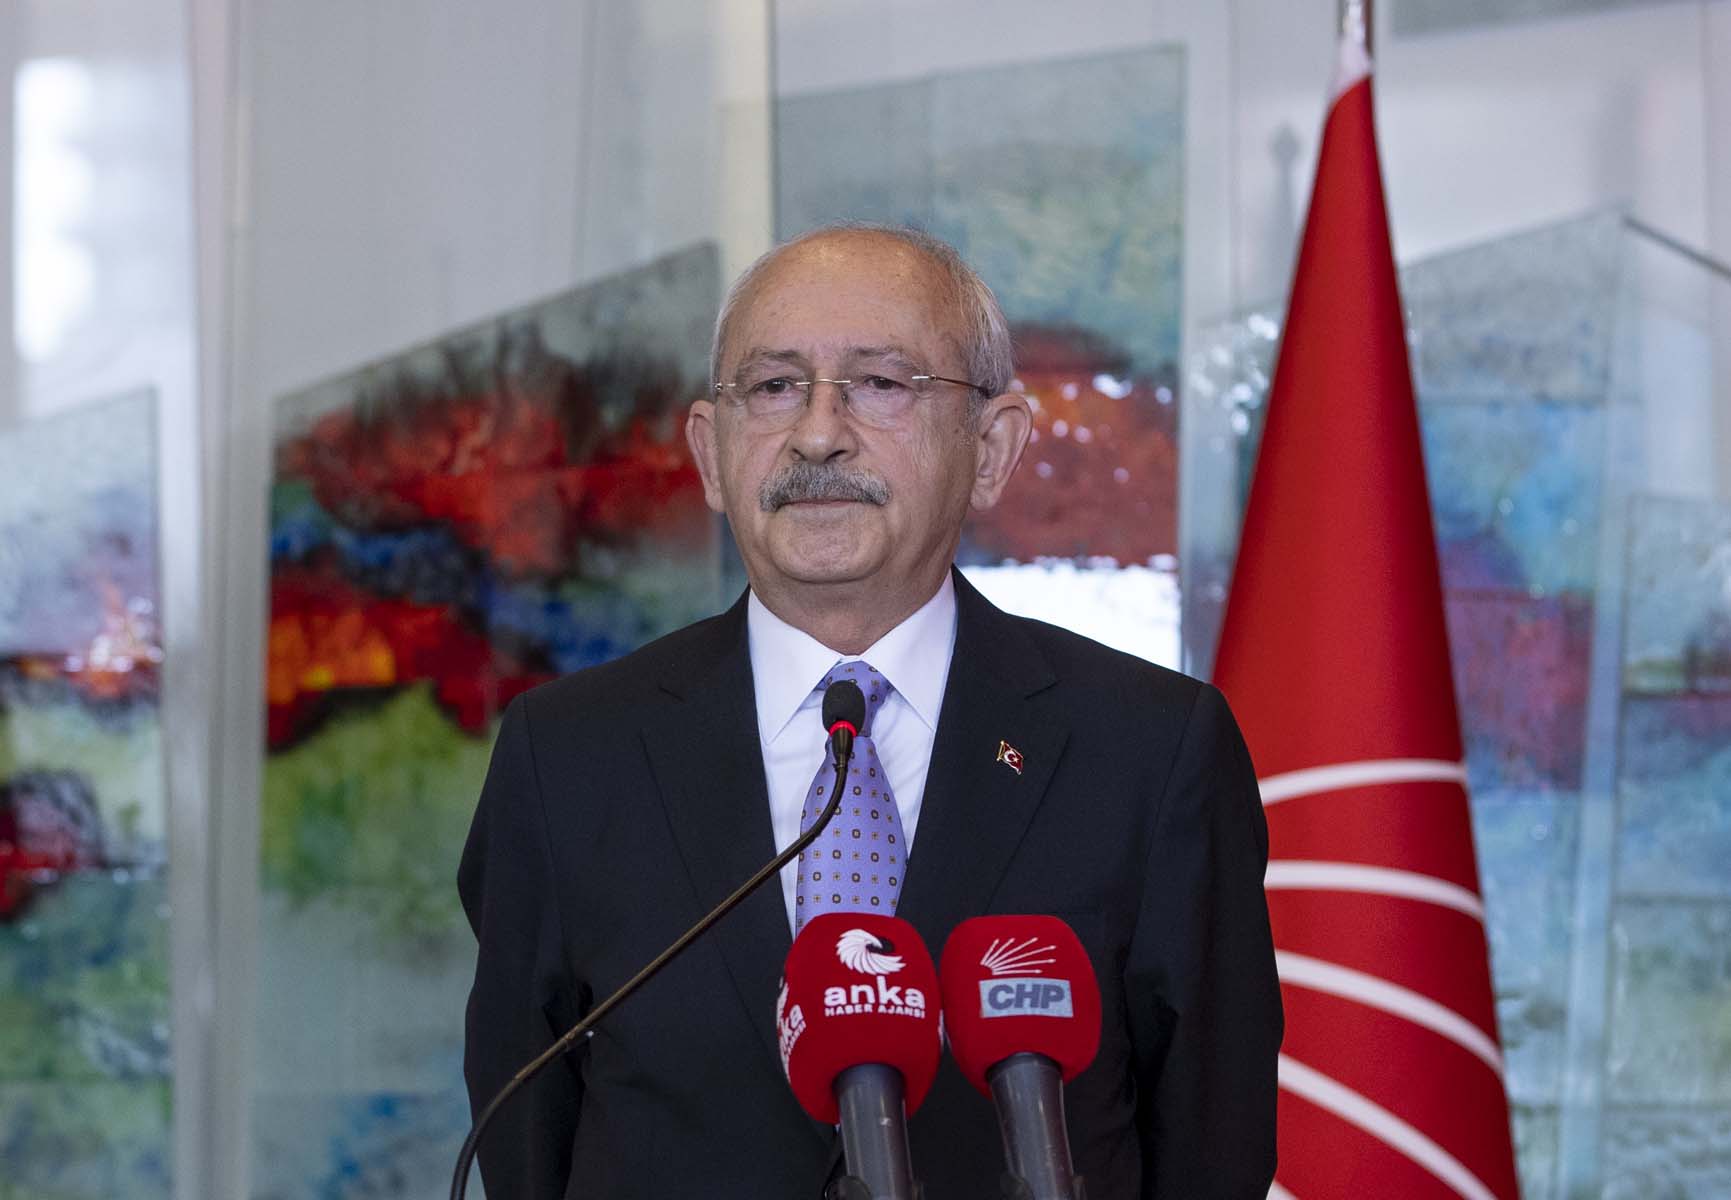 AK Partili Çelik'ten Kemal Kılıçdaroğlu'na elektrik faturası üzerinden zehir zemberek sözler: Kanunsuzluğu muhalefet zannetmek siyasi partinin iflasıdır